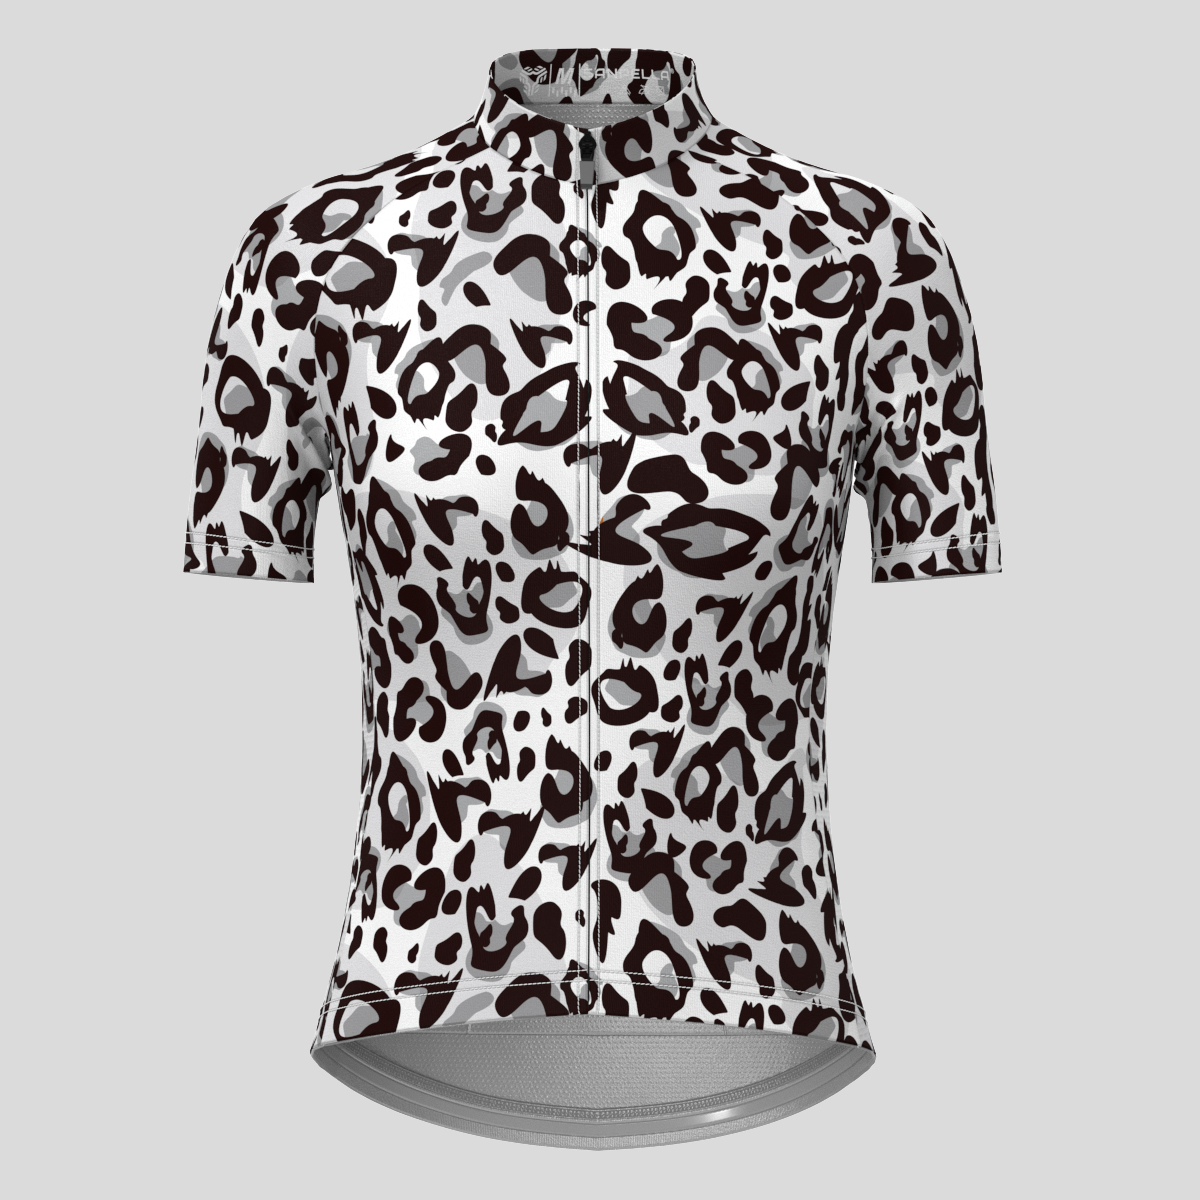 Leopard Print Women's Cycling Jersey - Black/White